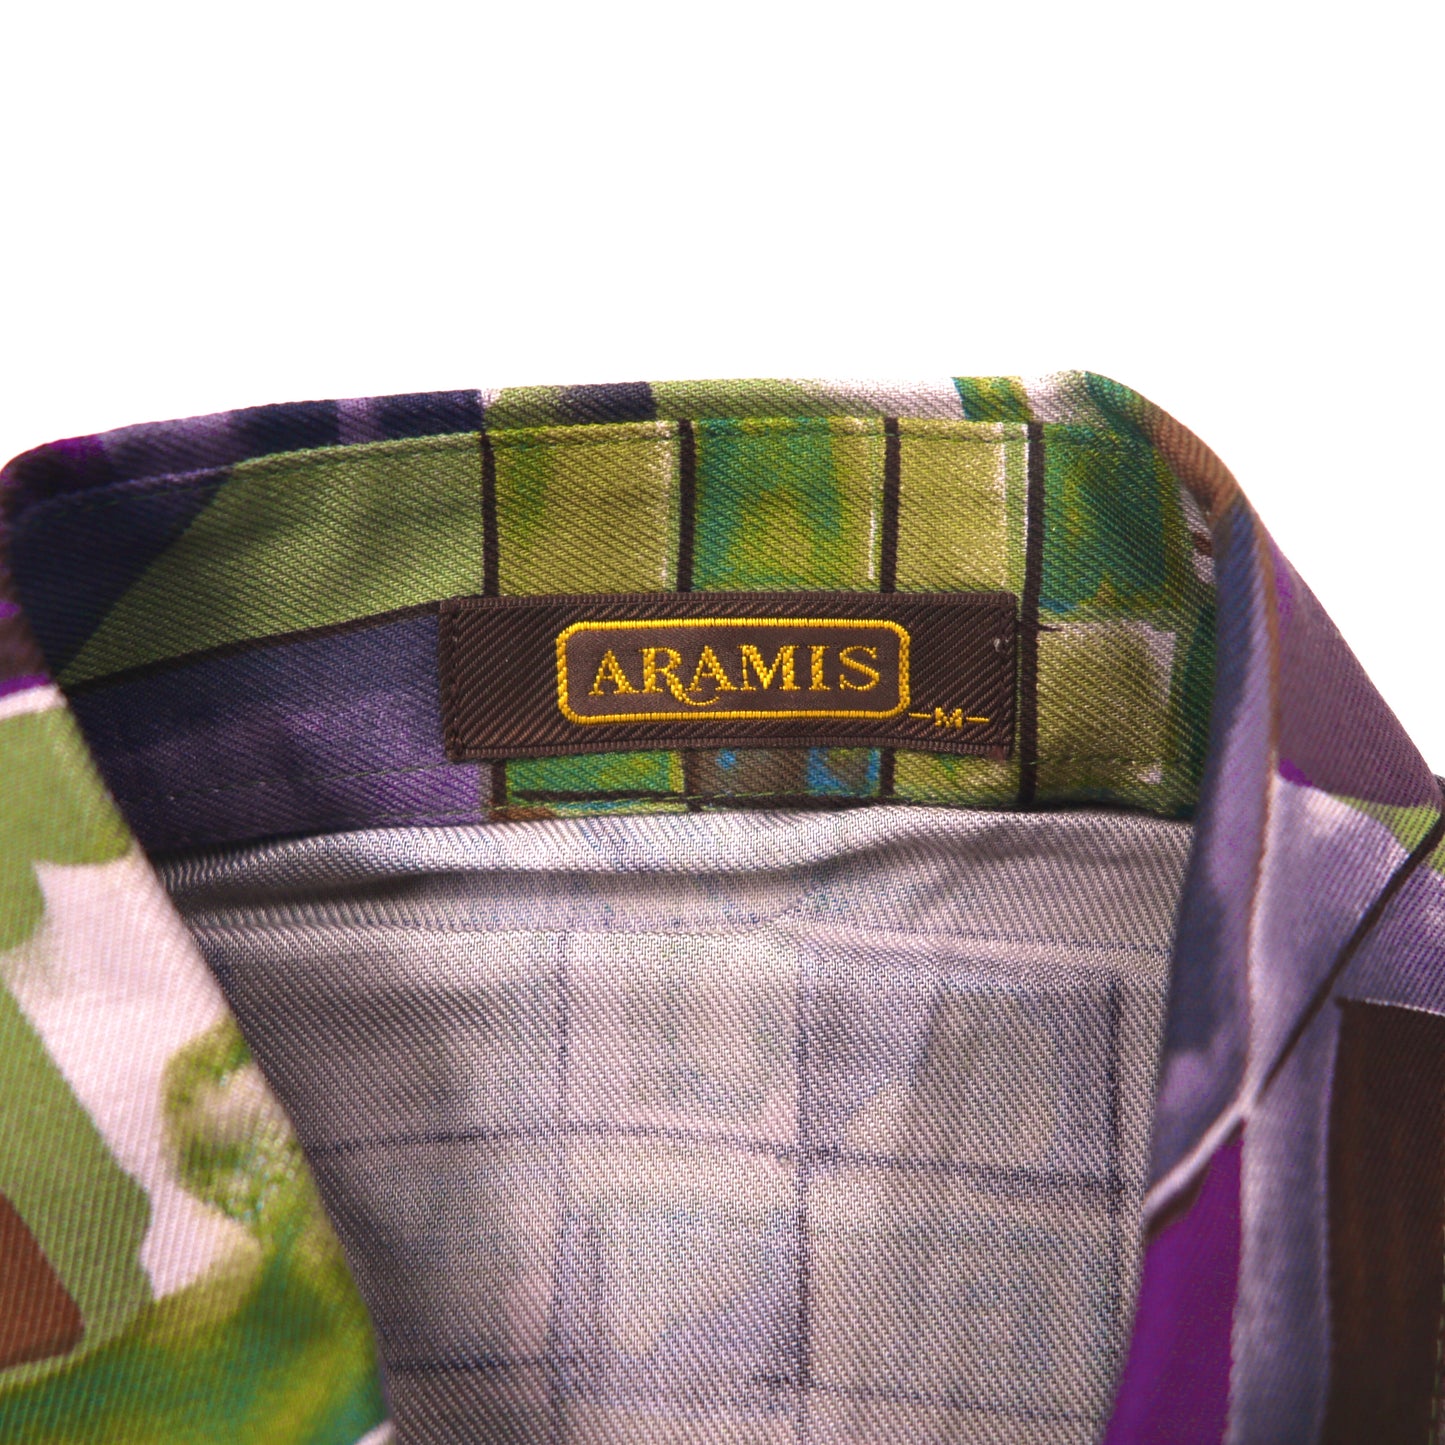 ARAMIS ポリシャツ M マルチカラー 総柄 日本製 デッドストック 未使用品